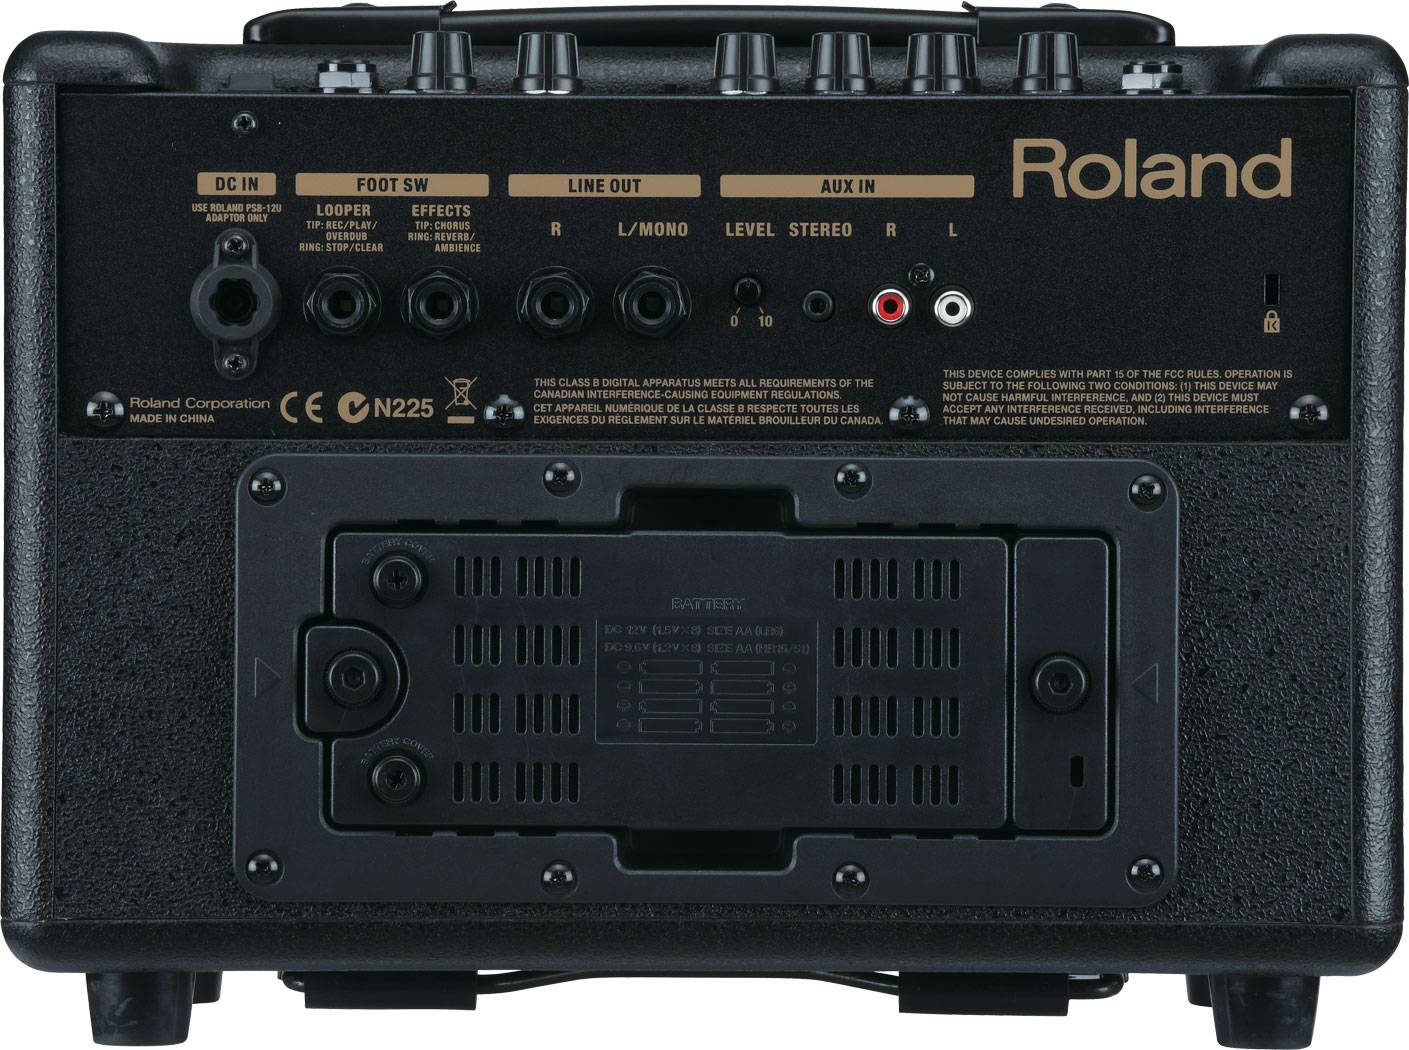 Roland Acoustic Chorus 33 Black 30 Watt Acoustic Instruments Amplifier